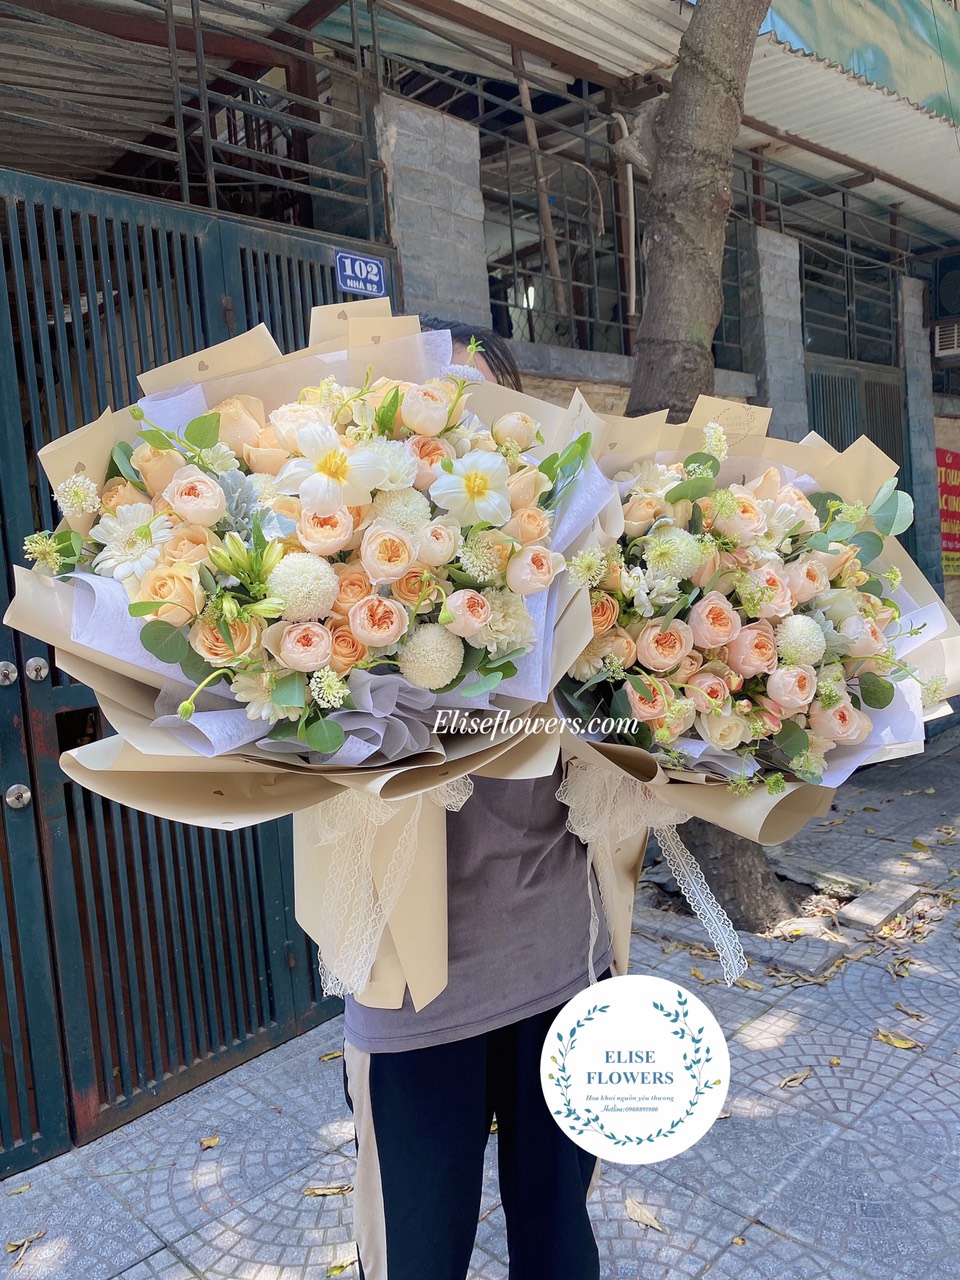 Bó hoa hồng ngoại Juliet đẹp thanh lịch | Eliseflowers - Bó hoa hồng ngoại Juliet đẹp ở Hà Nội